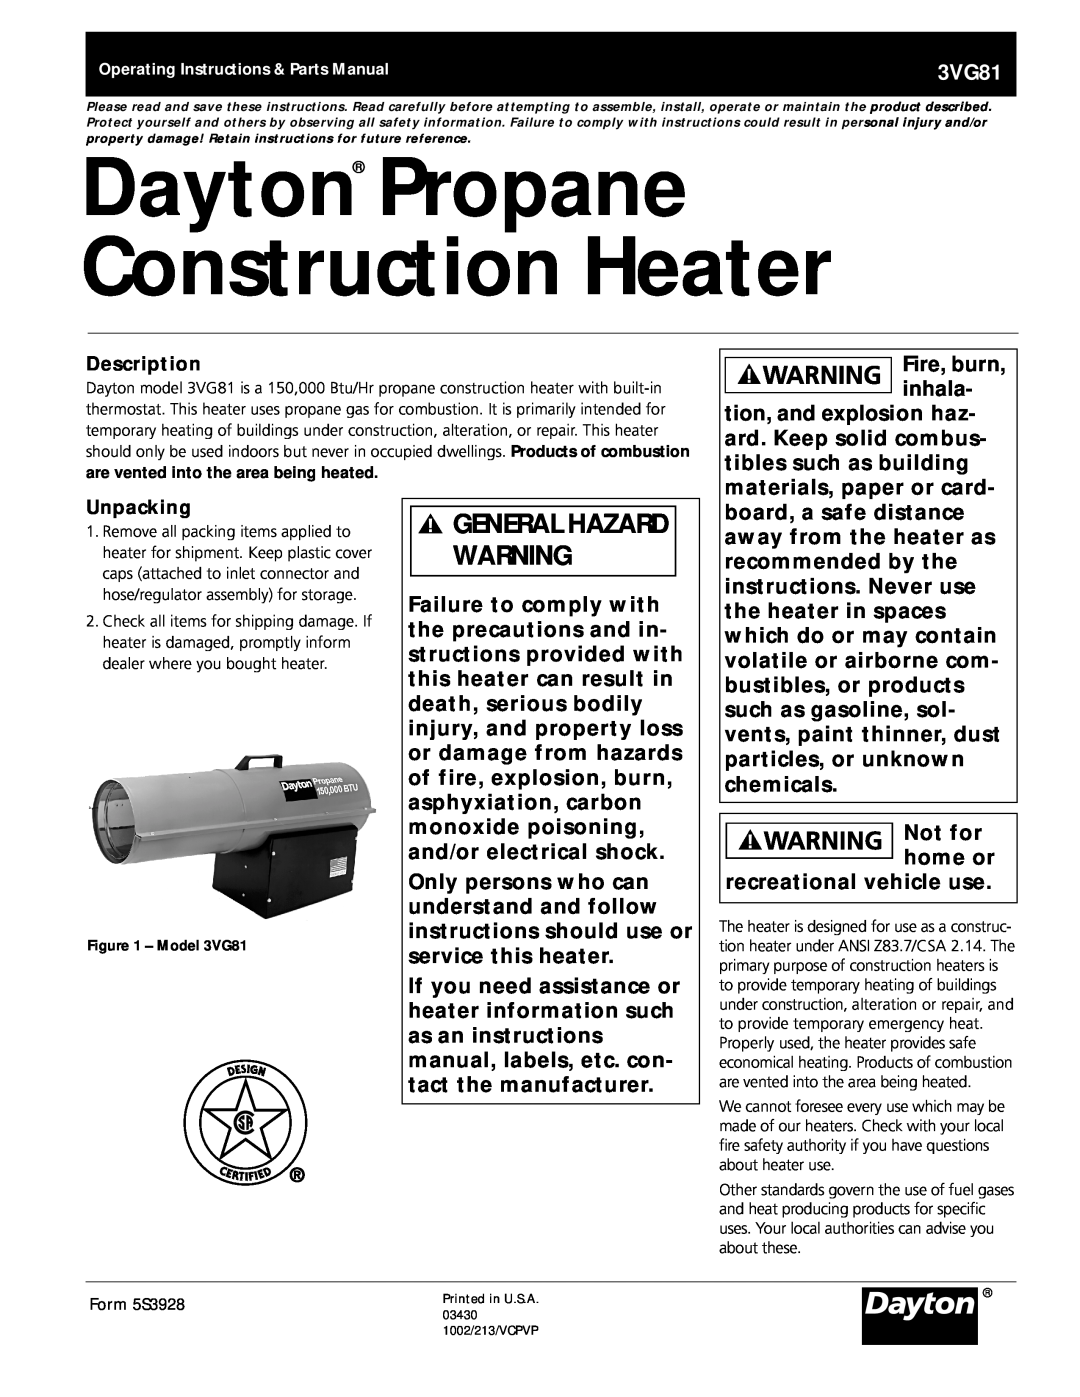 Dayton 3VG81 manual Dayton Propane Construction Heater, General Hazard Warning 